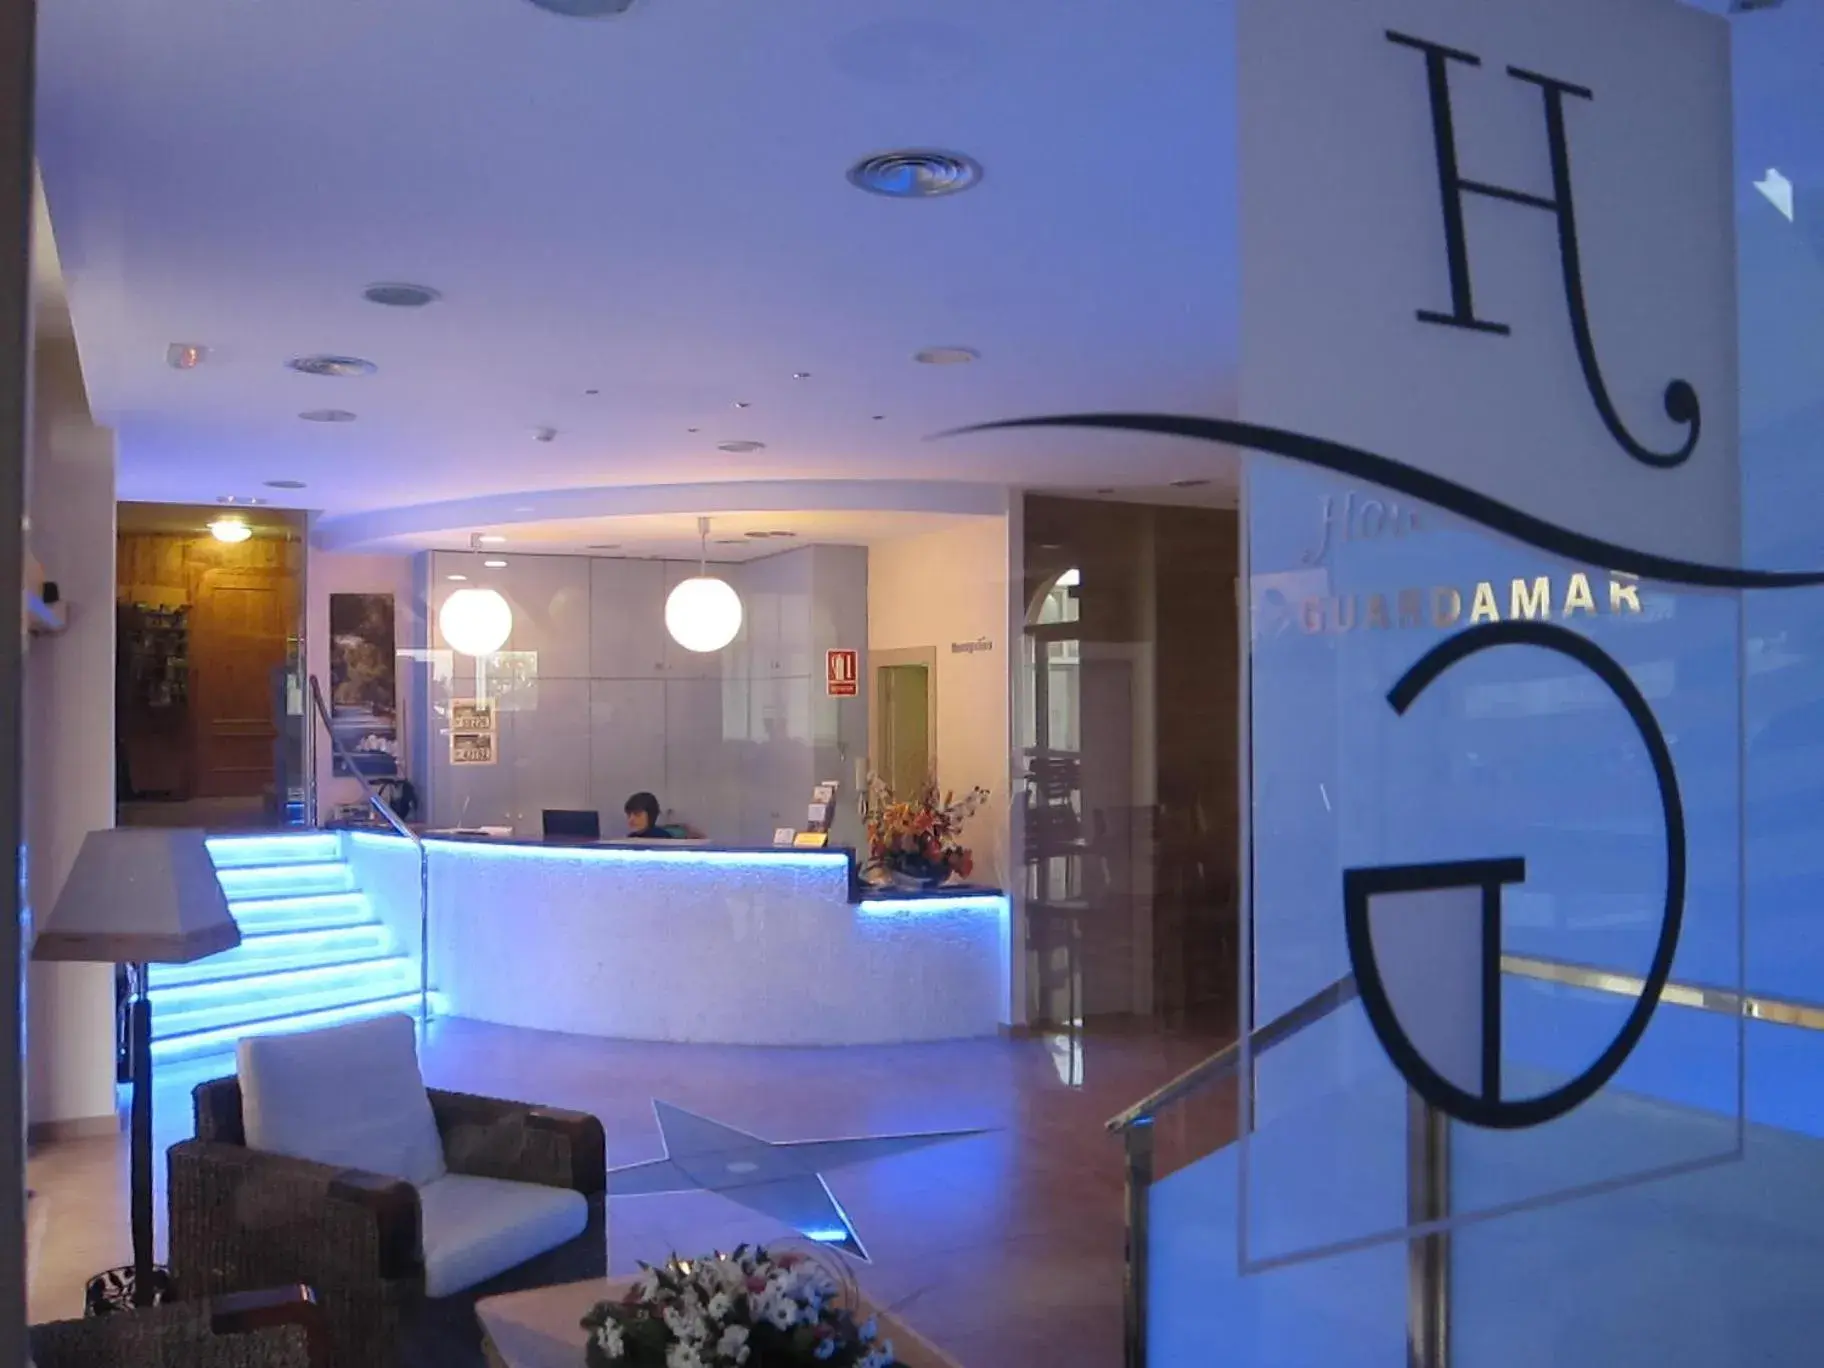 Lobby or reception in Hotel Guardamar